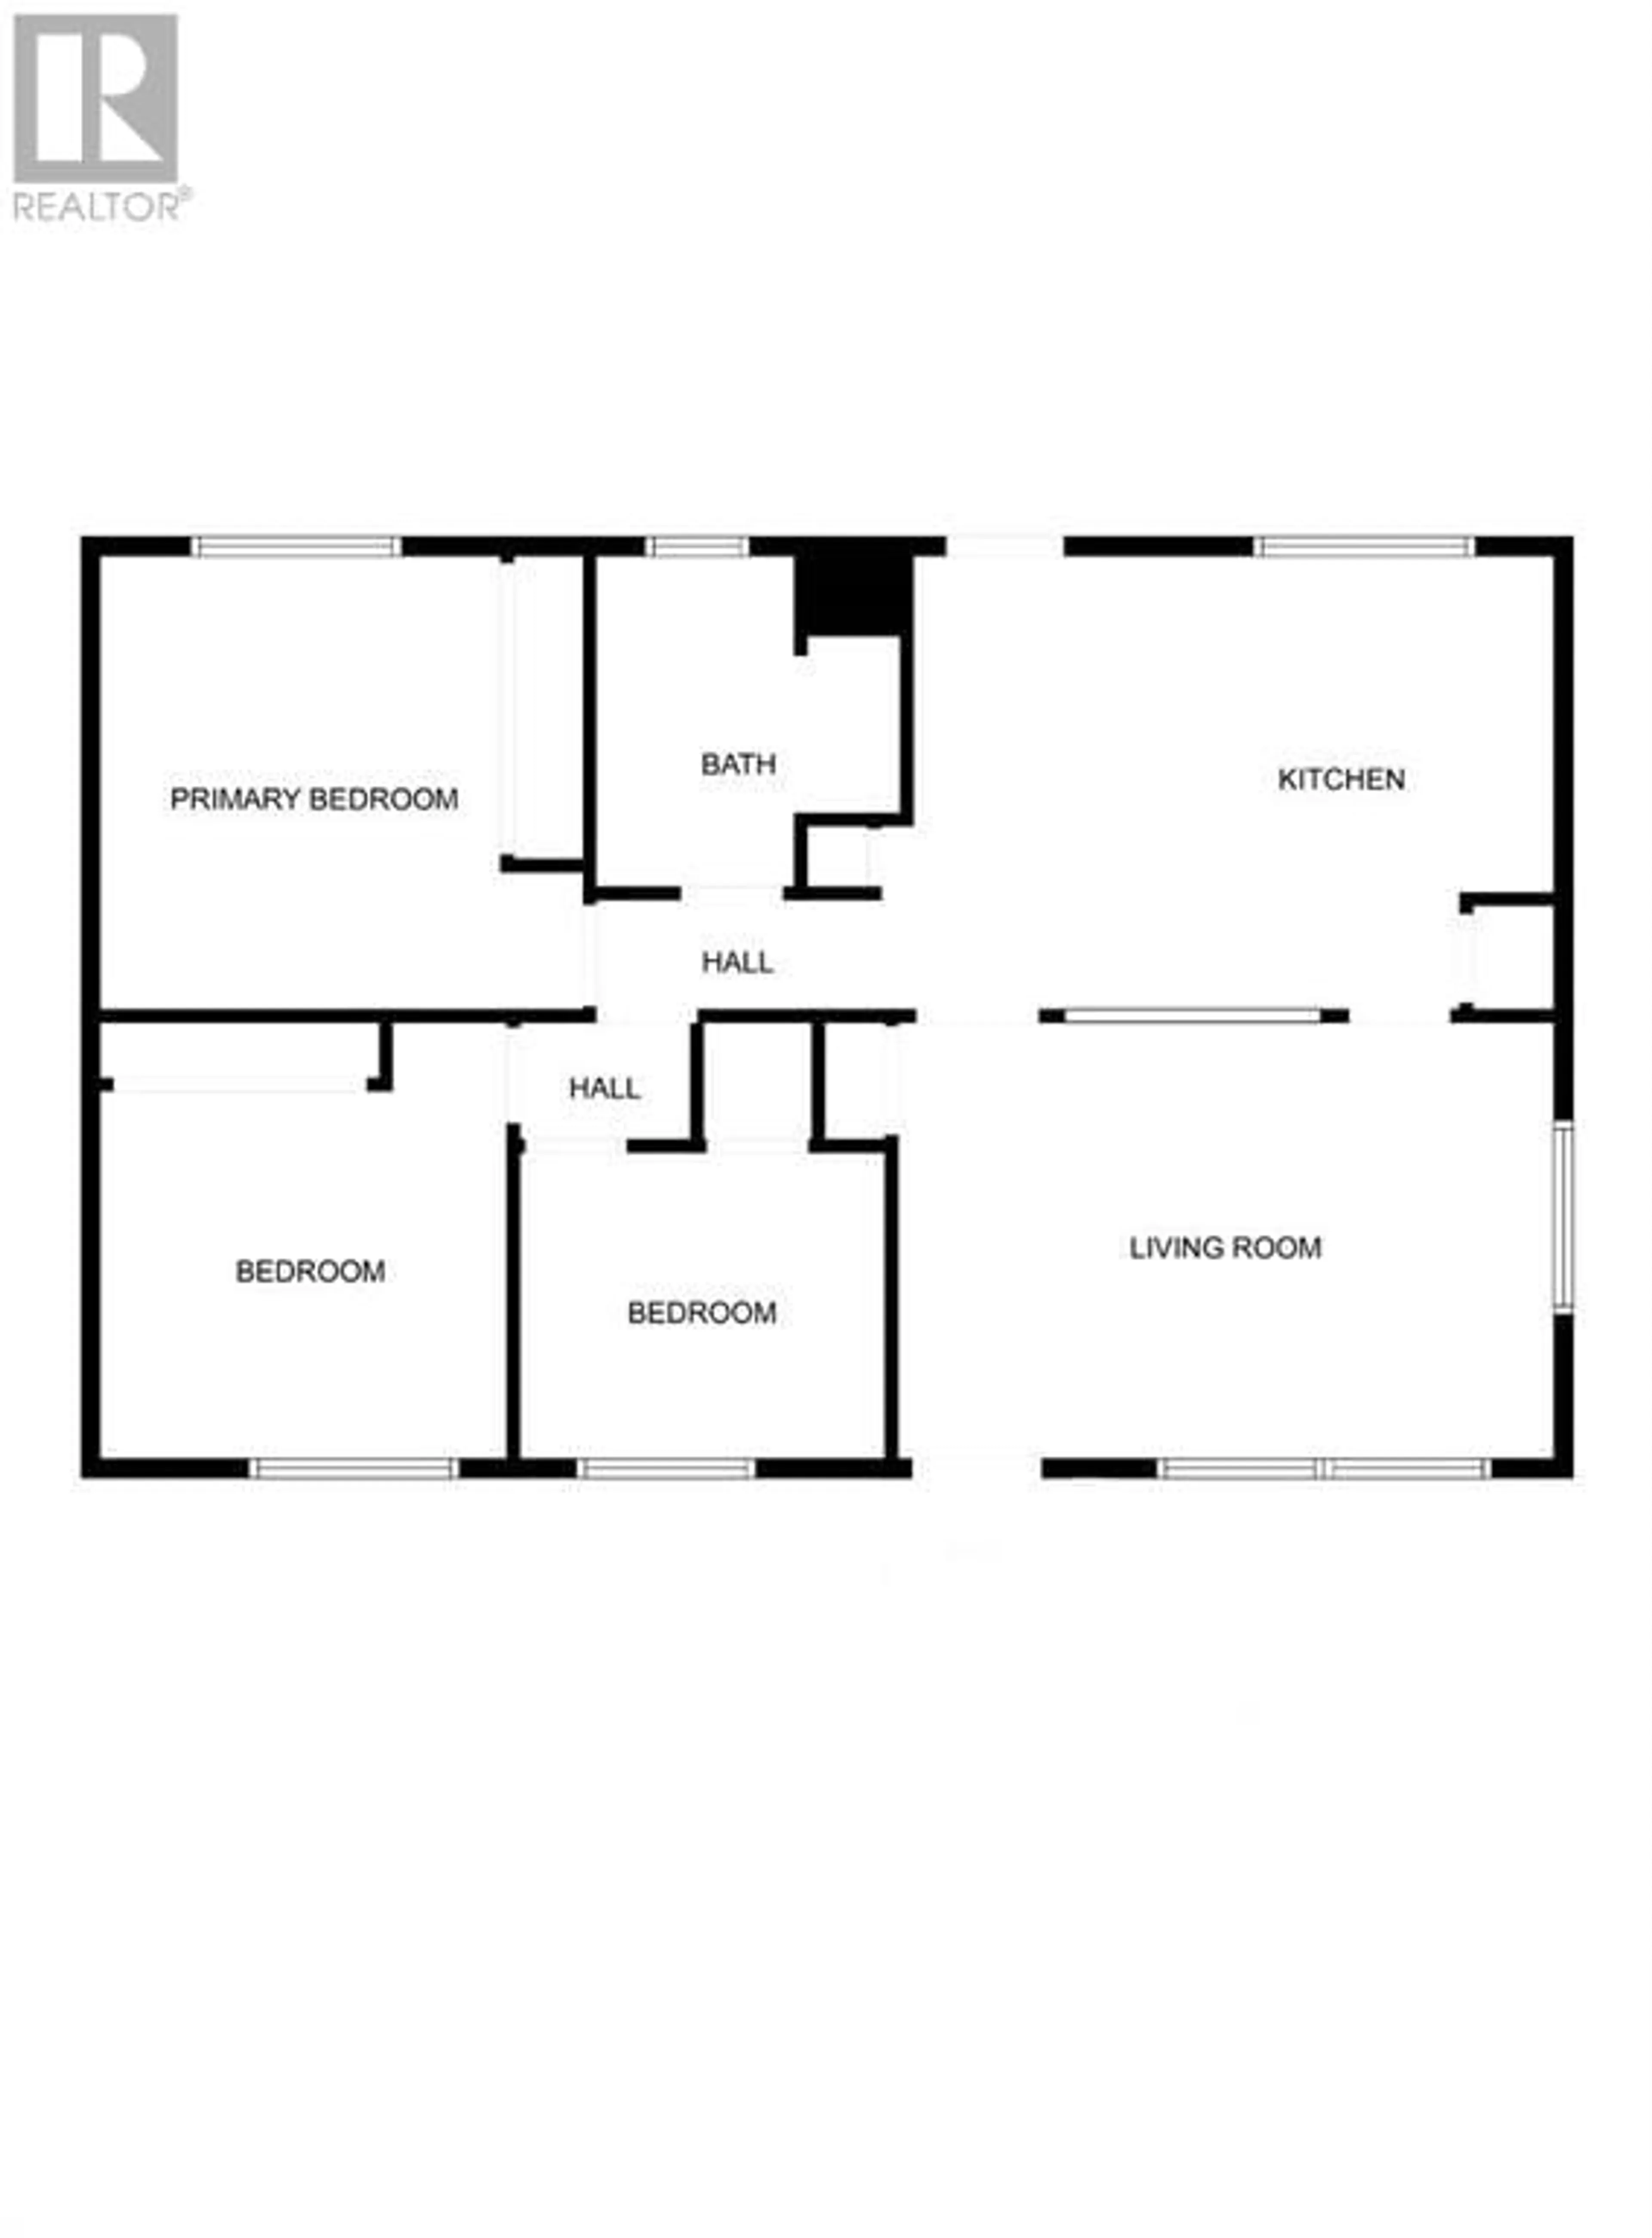 Floor plan for 5402 46 Avenue W, Forestburg Alberta T0B1N0